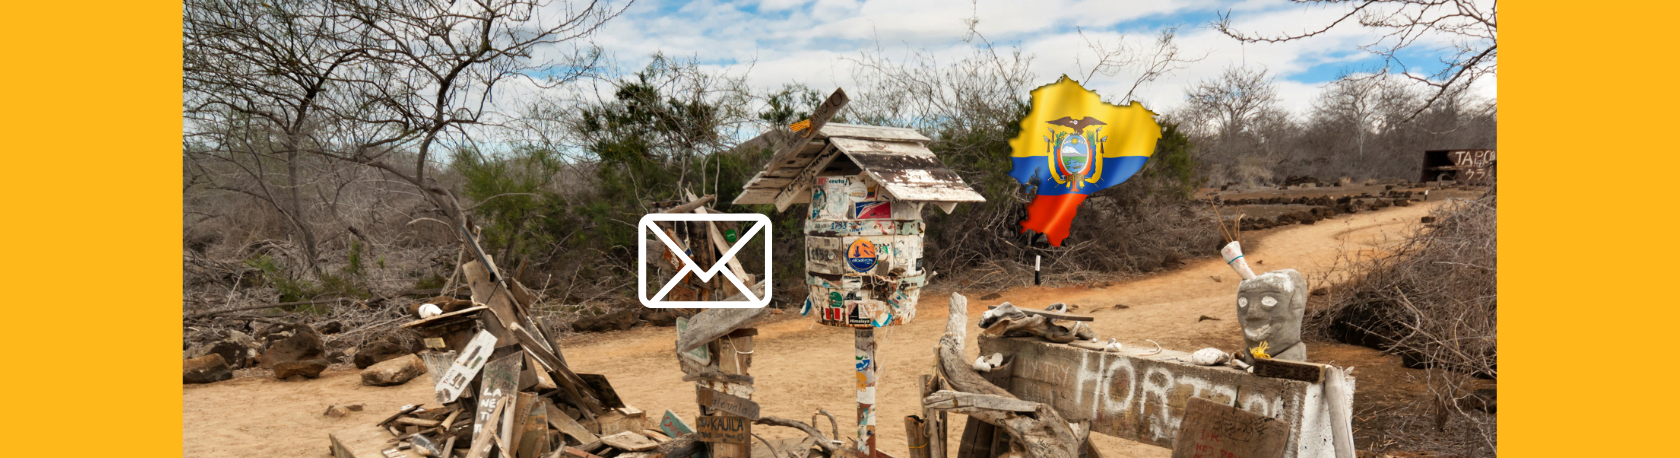 ¿Sabías que las islas Galápagos tienen un sistema de correos muy particular? - Easy Español